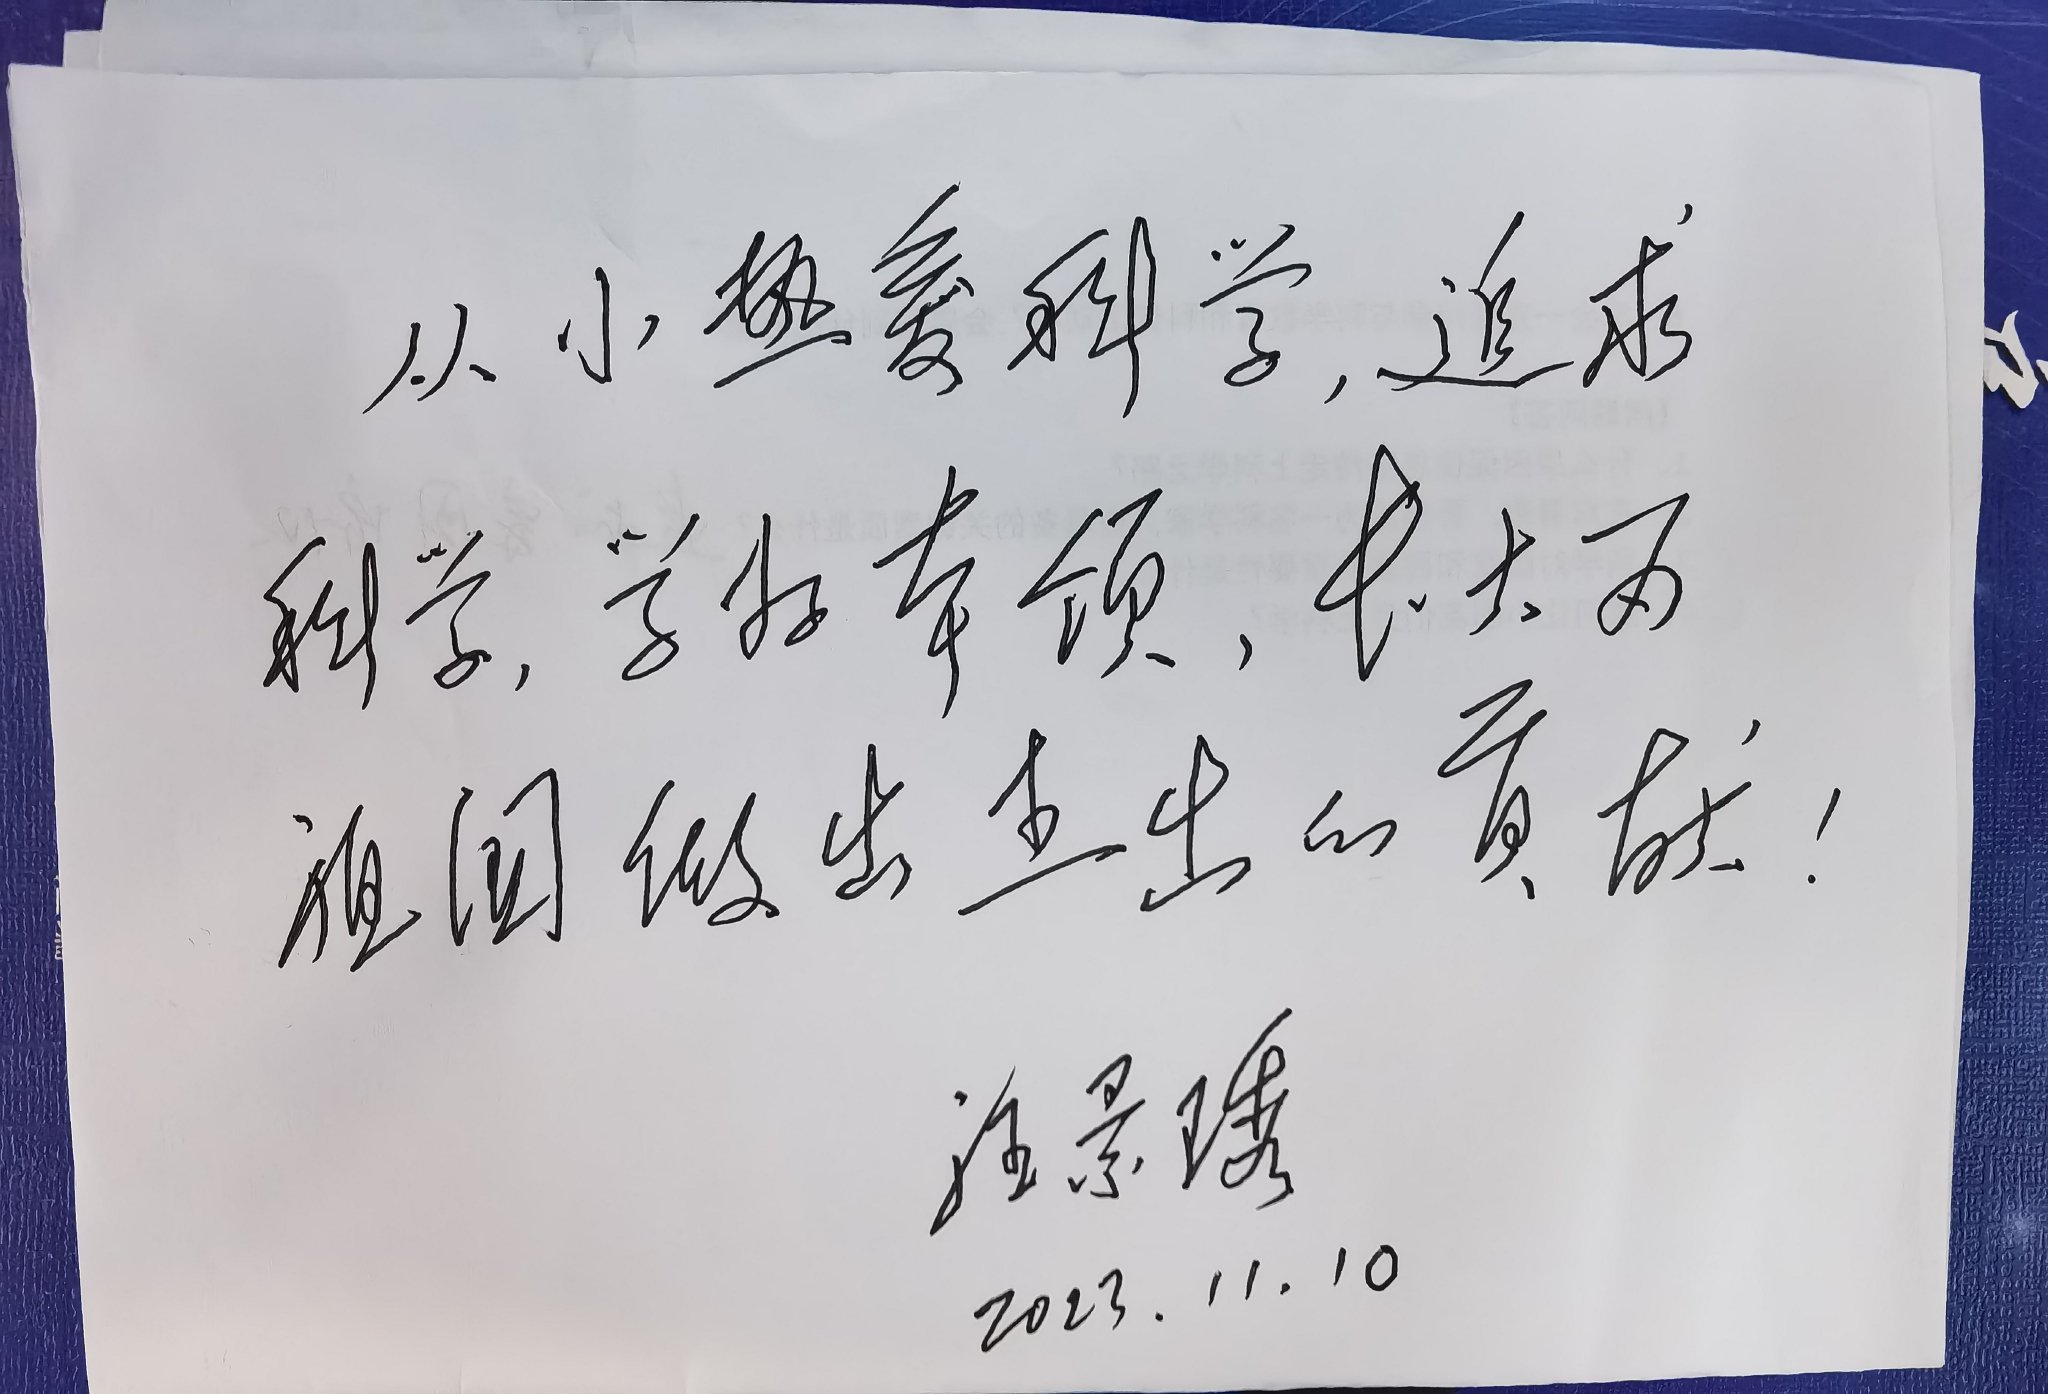 汪景琇院士手寫給學生們的寄語。新京報記者 楊菲菲 攝